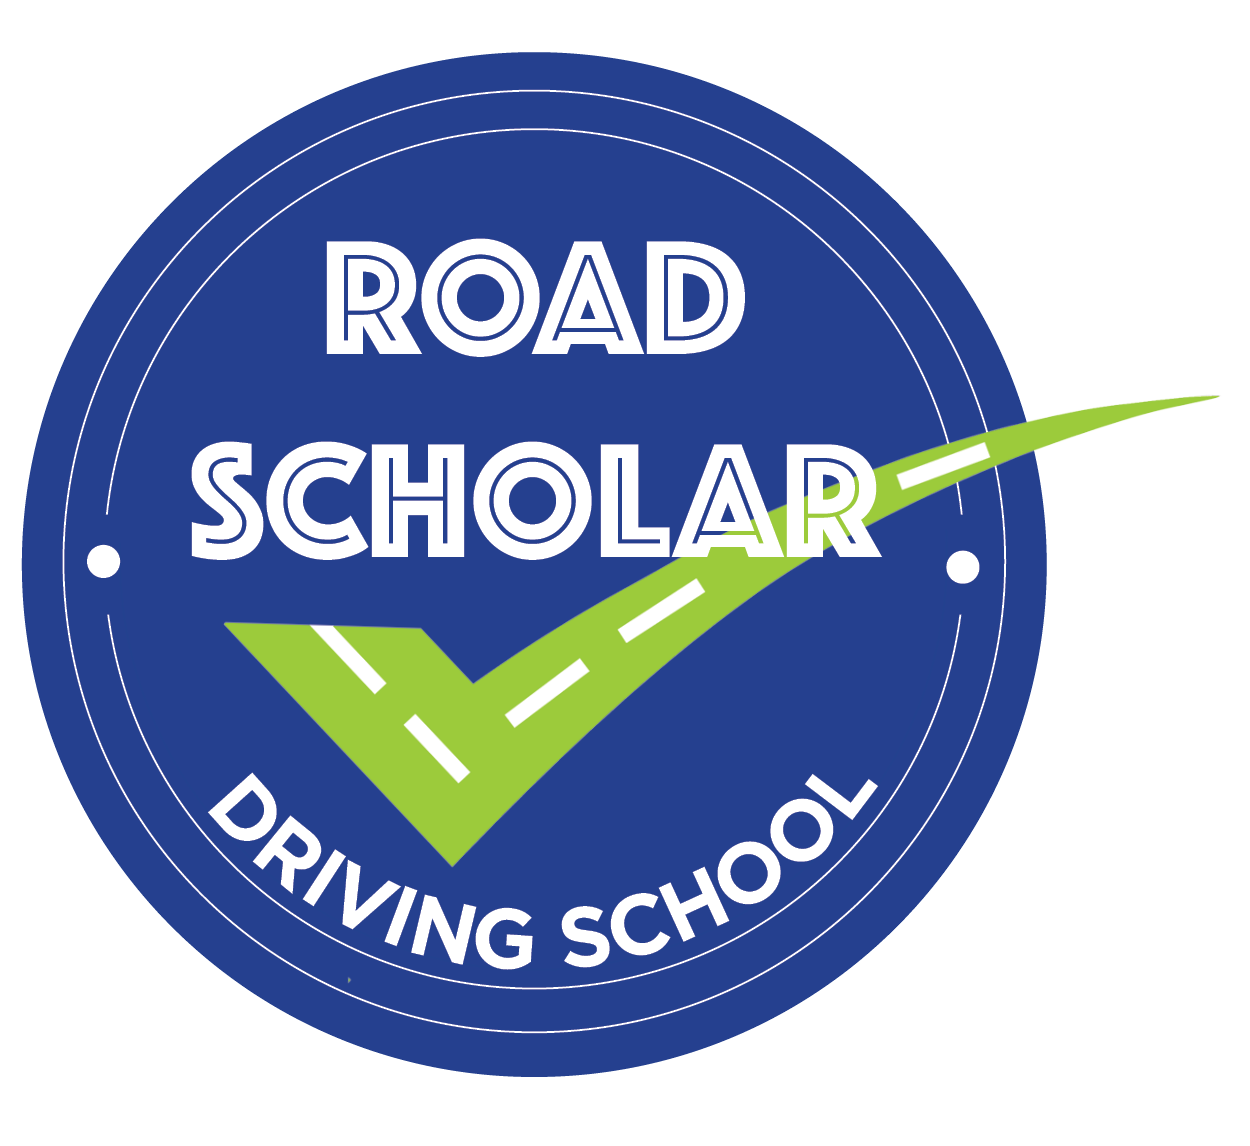 Road Scholar Driving School Office Hours